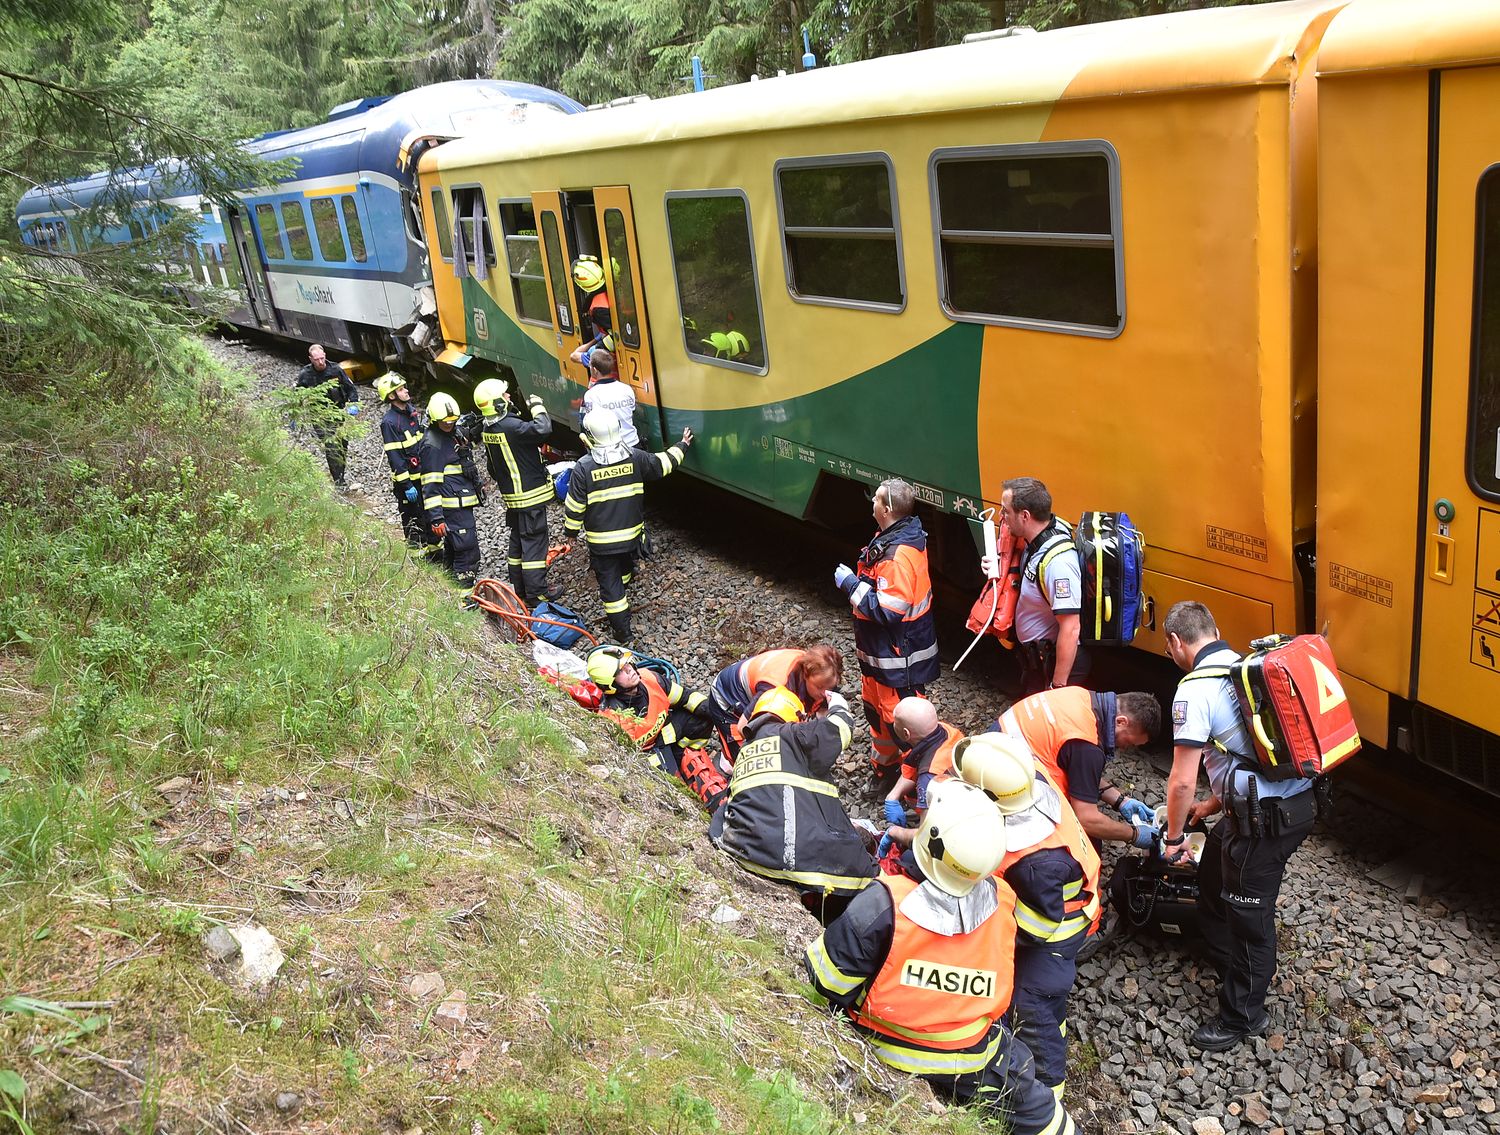 44_KVK_železniční nehoda Pernink _hasiči prohledávají vlak, záchranáři ošetřují zraněné.jpg